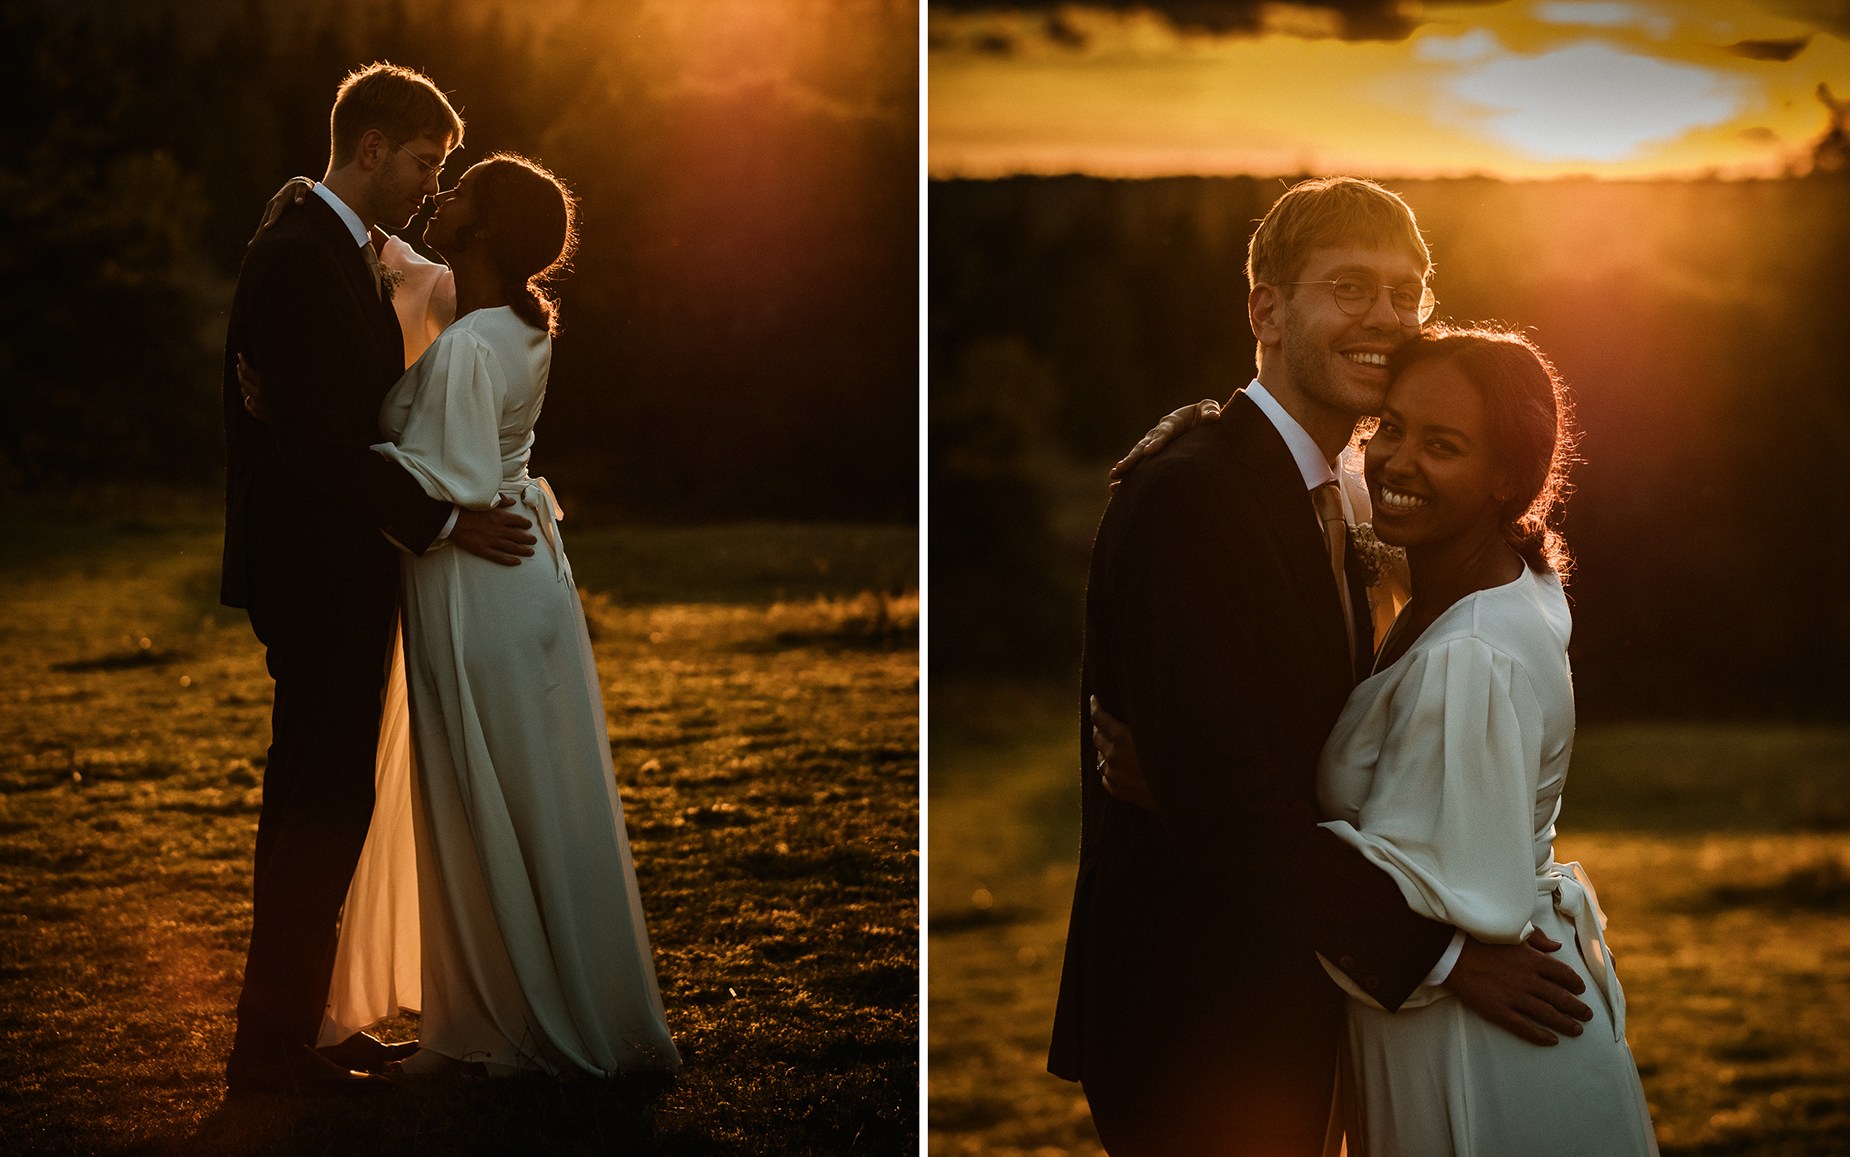 Bröllopsfotografering under den gyllene timmen - bröllopsfotograf i Eksjö och Nässjö